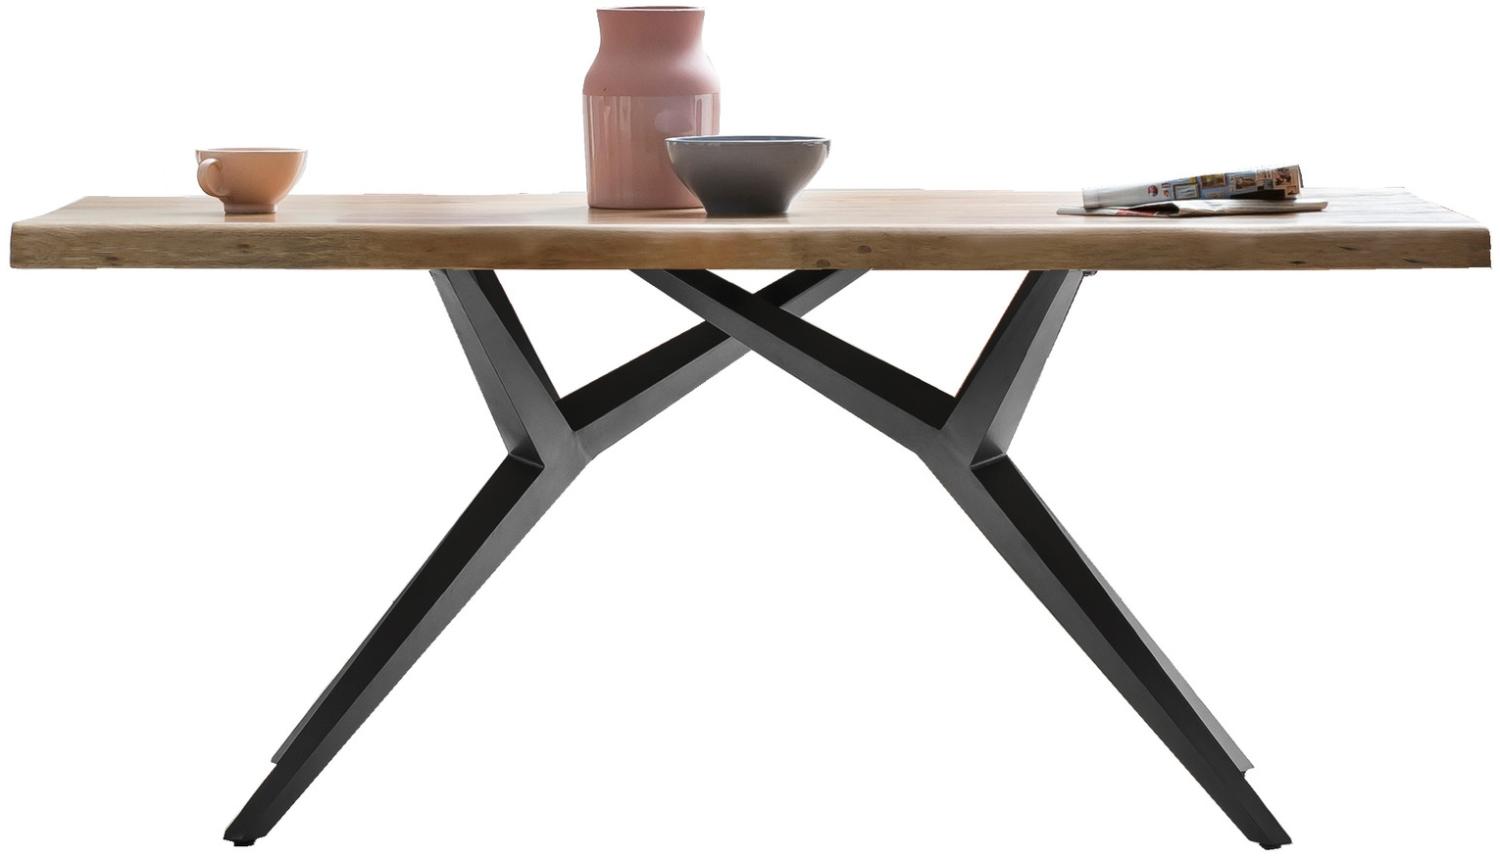 Sit Möbel Tables & Co Tisch 180x100 cm L = 180 x B = 100 x H = 80,5 cm Platte natur, Gestell antikschwarz Bild 1